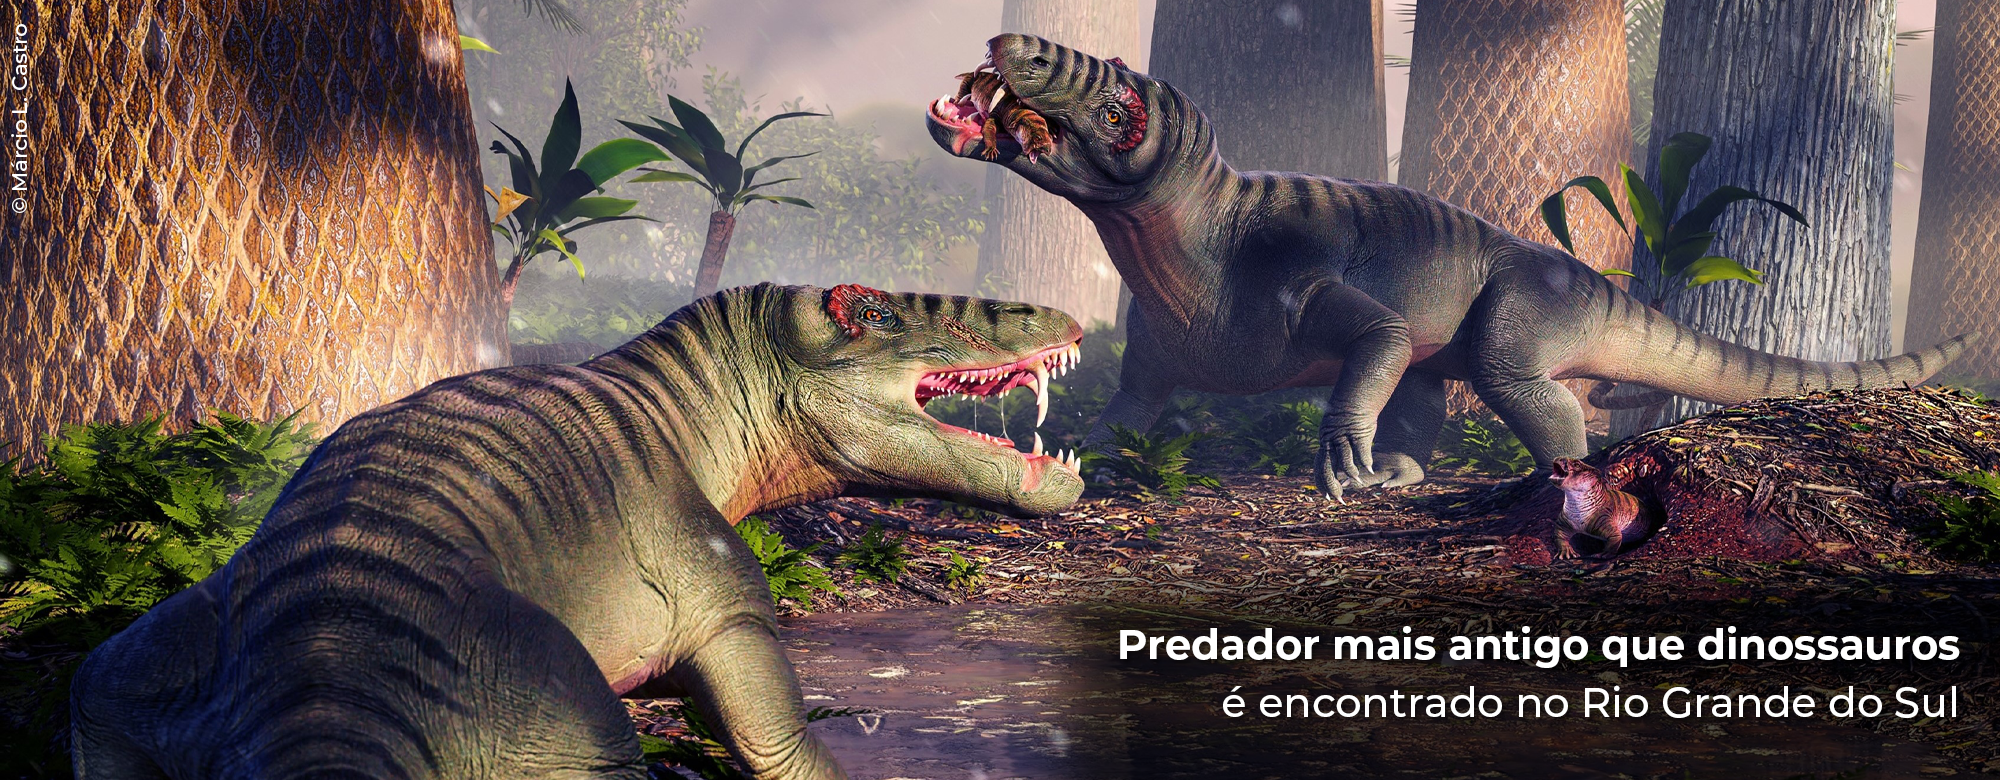 Descoberta: Predador mais antigo que dinossauros é encontrado no Rio Grande do Sul